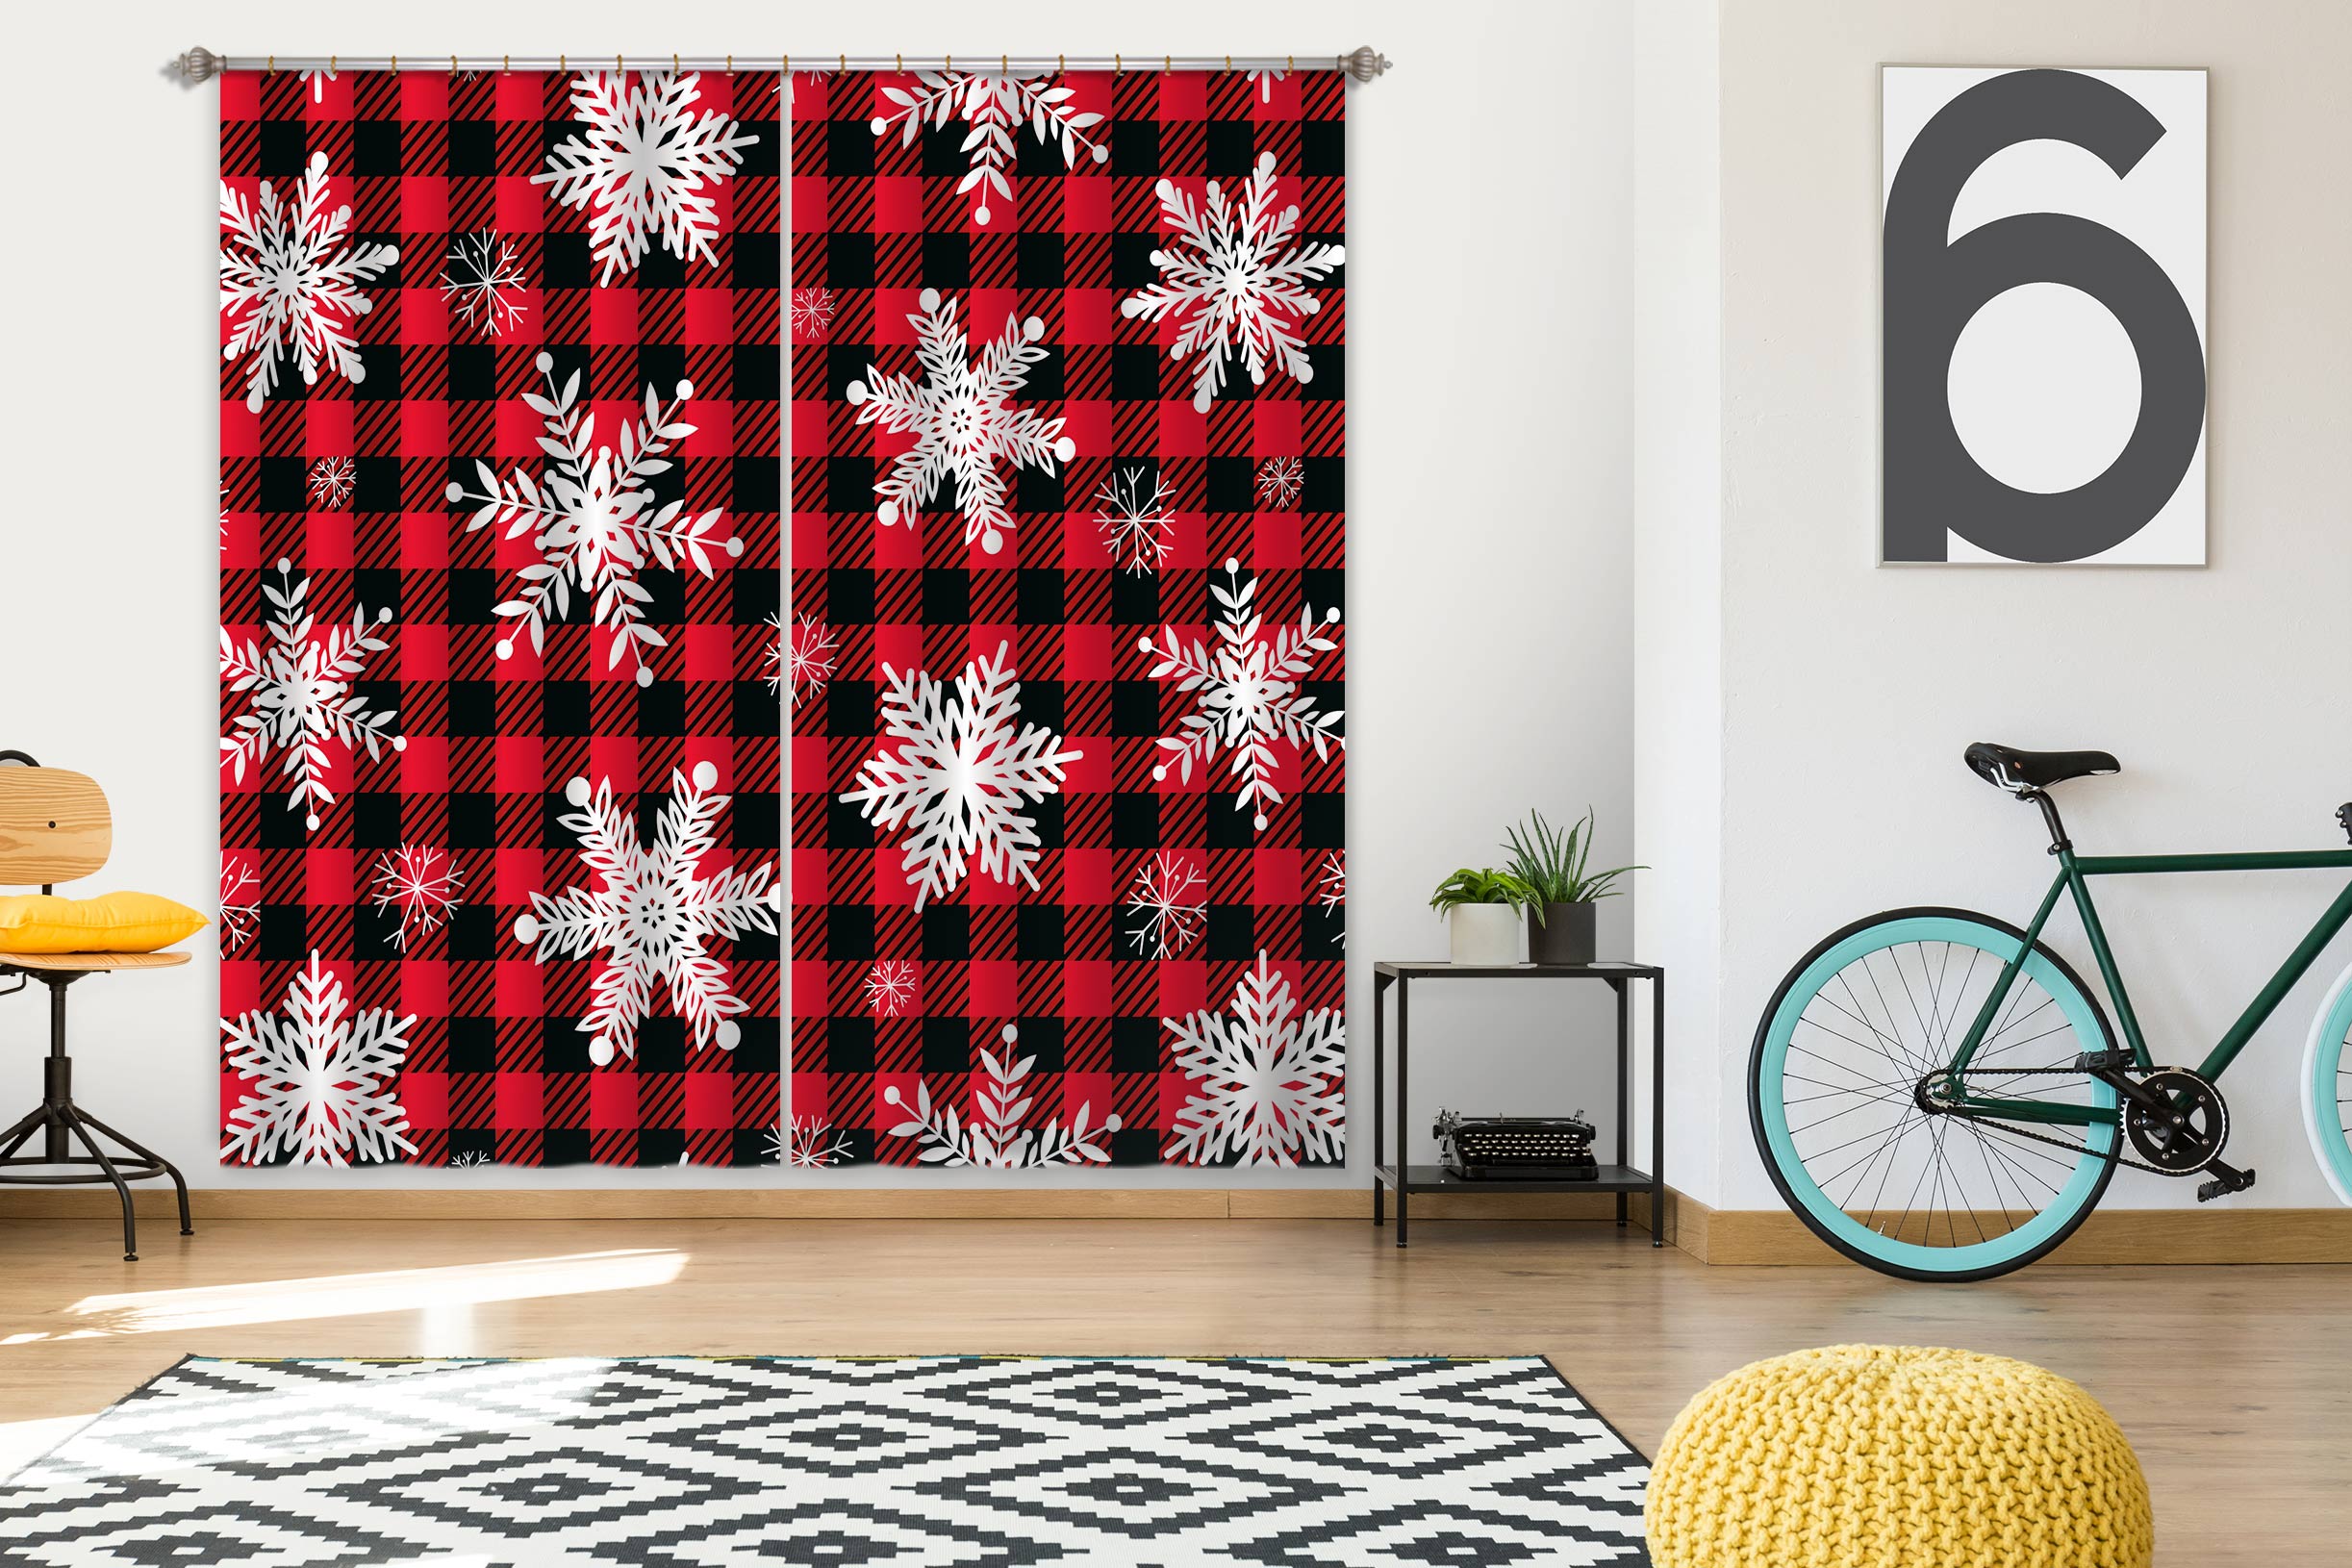 3D Snowflake Black Red Plaid 52085 Christmas Curtains Drapes Xmas